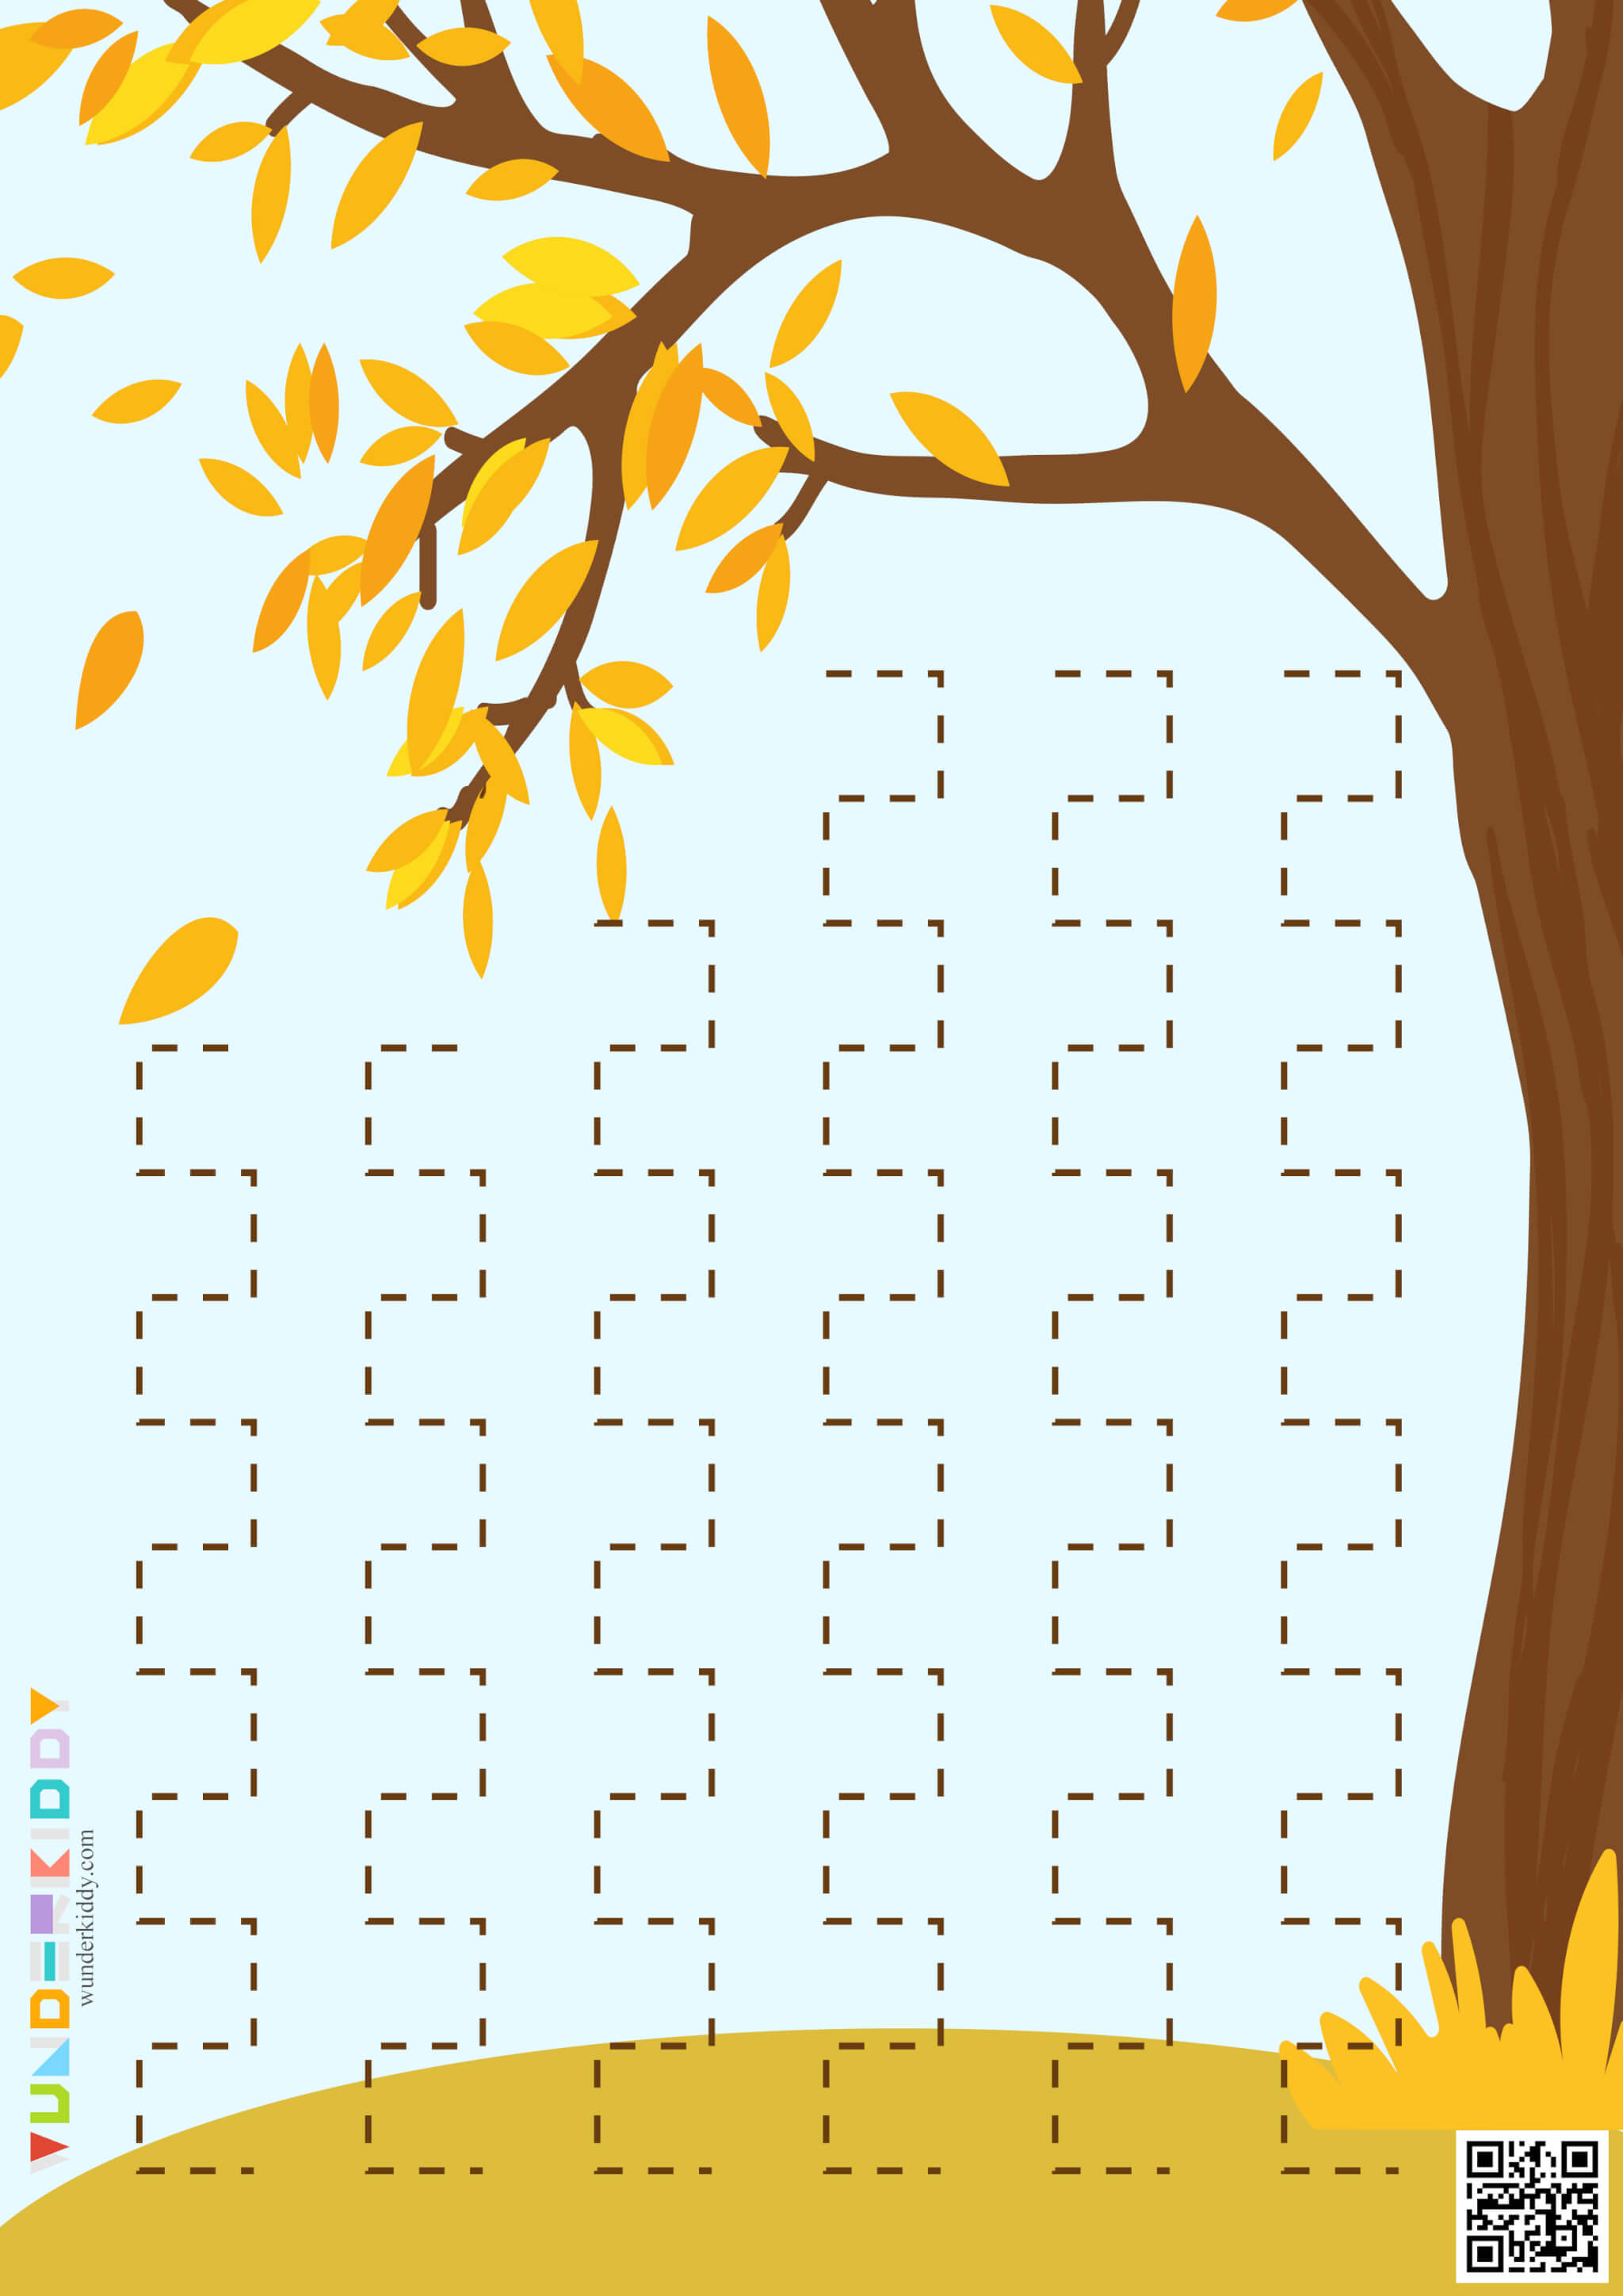 Worksheets «Leaf fall» - Image 8